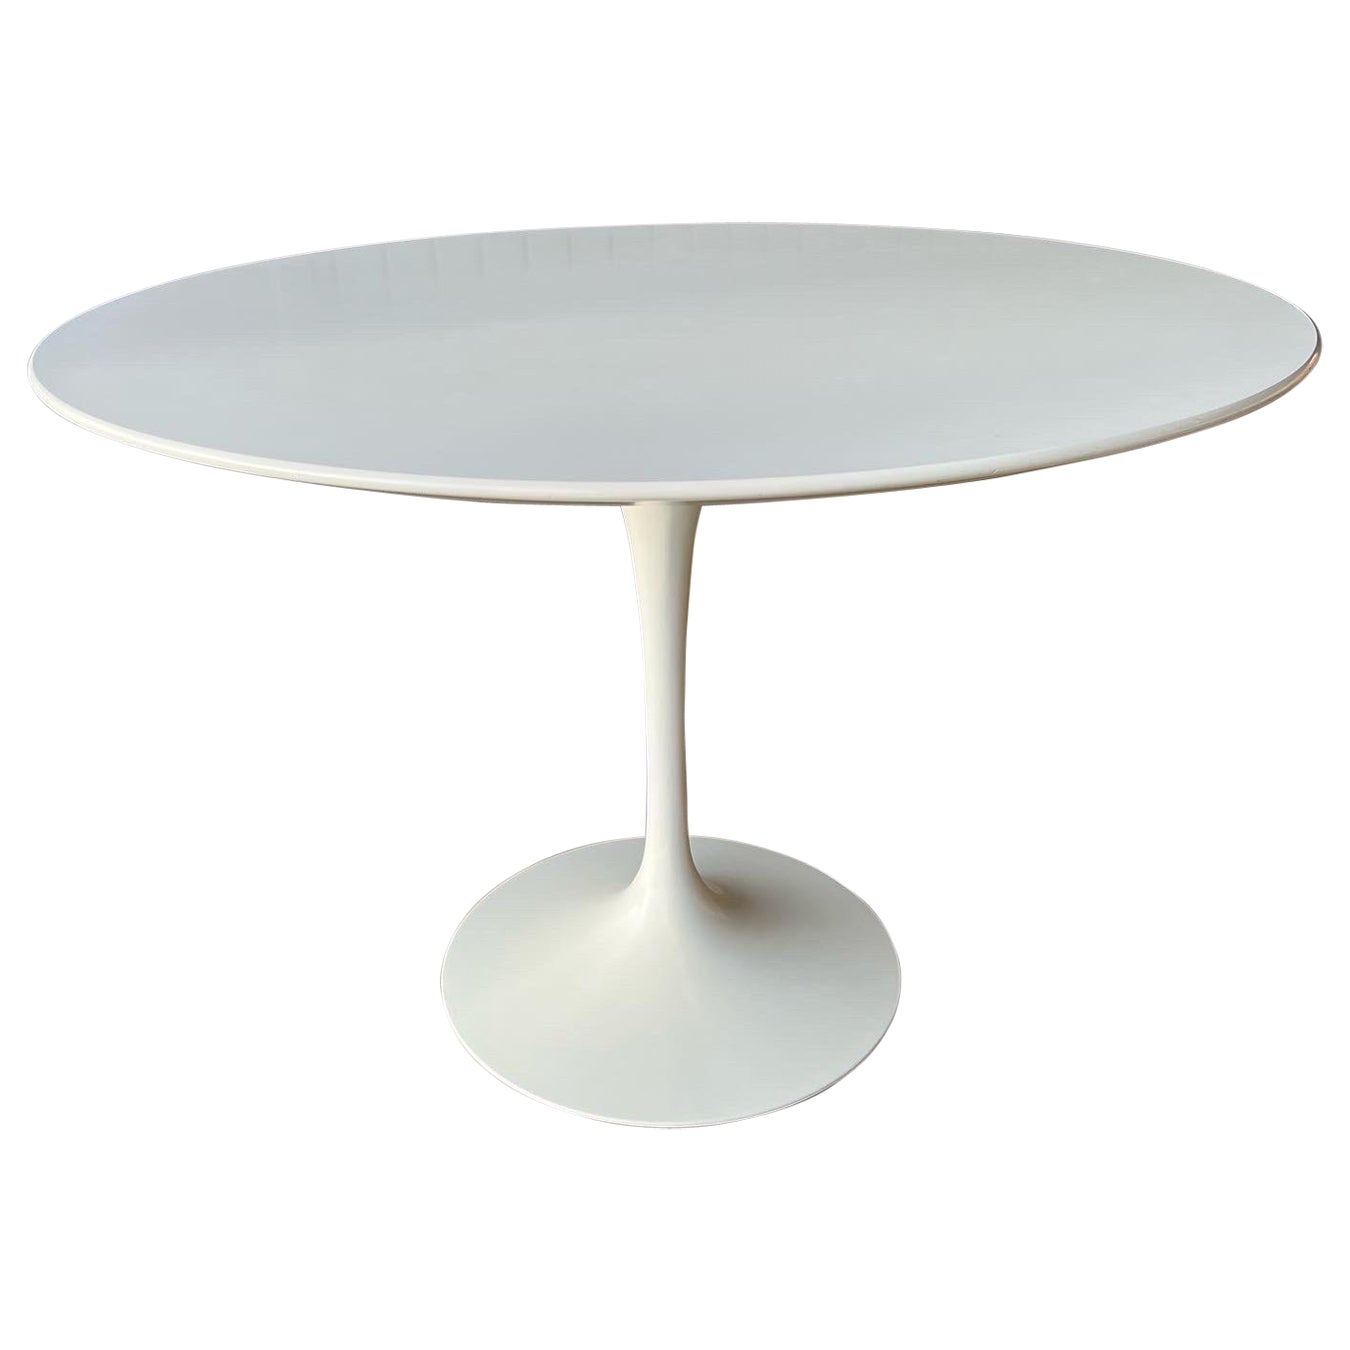 Mid century modern Saarinen dining table newer production